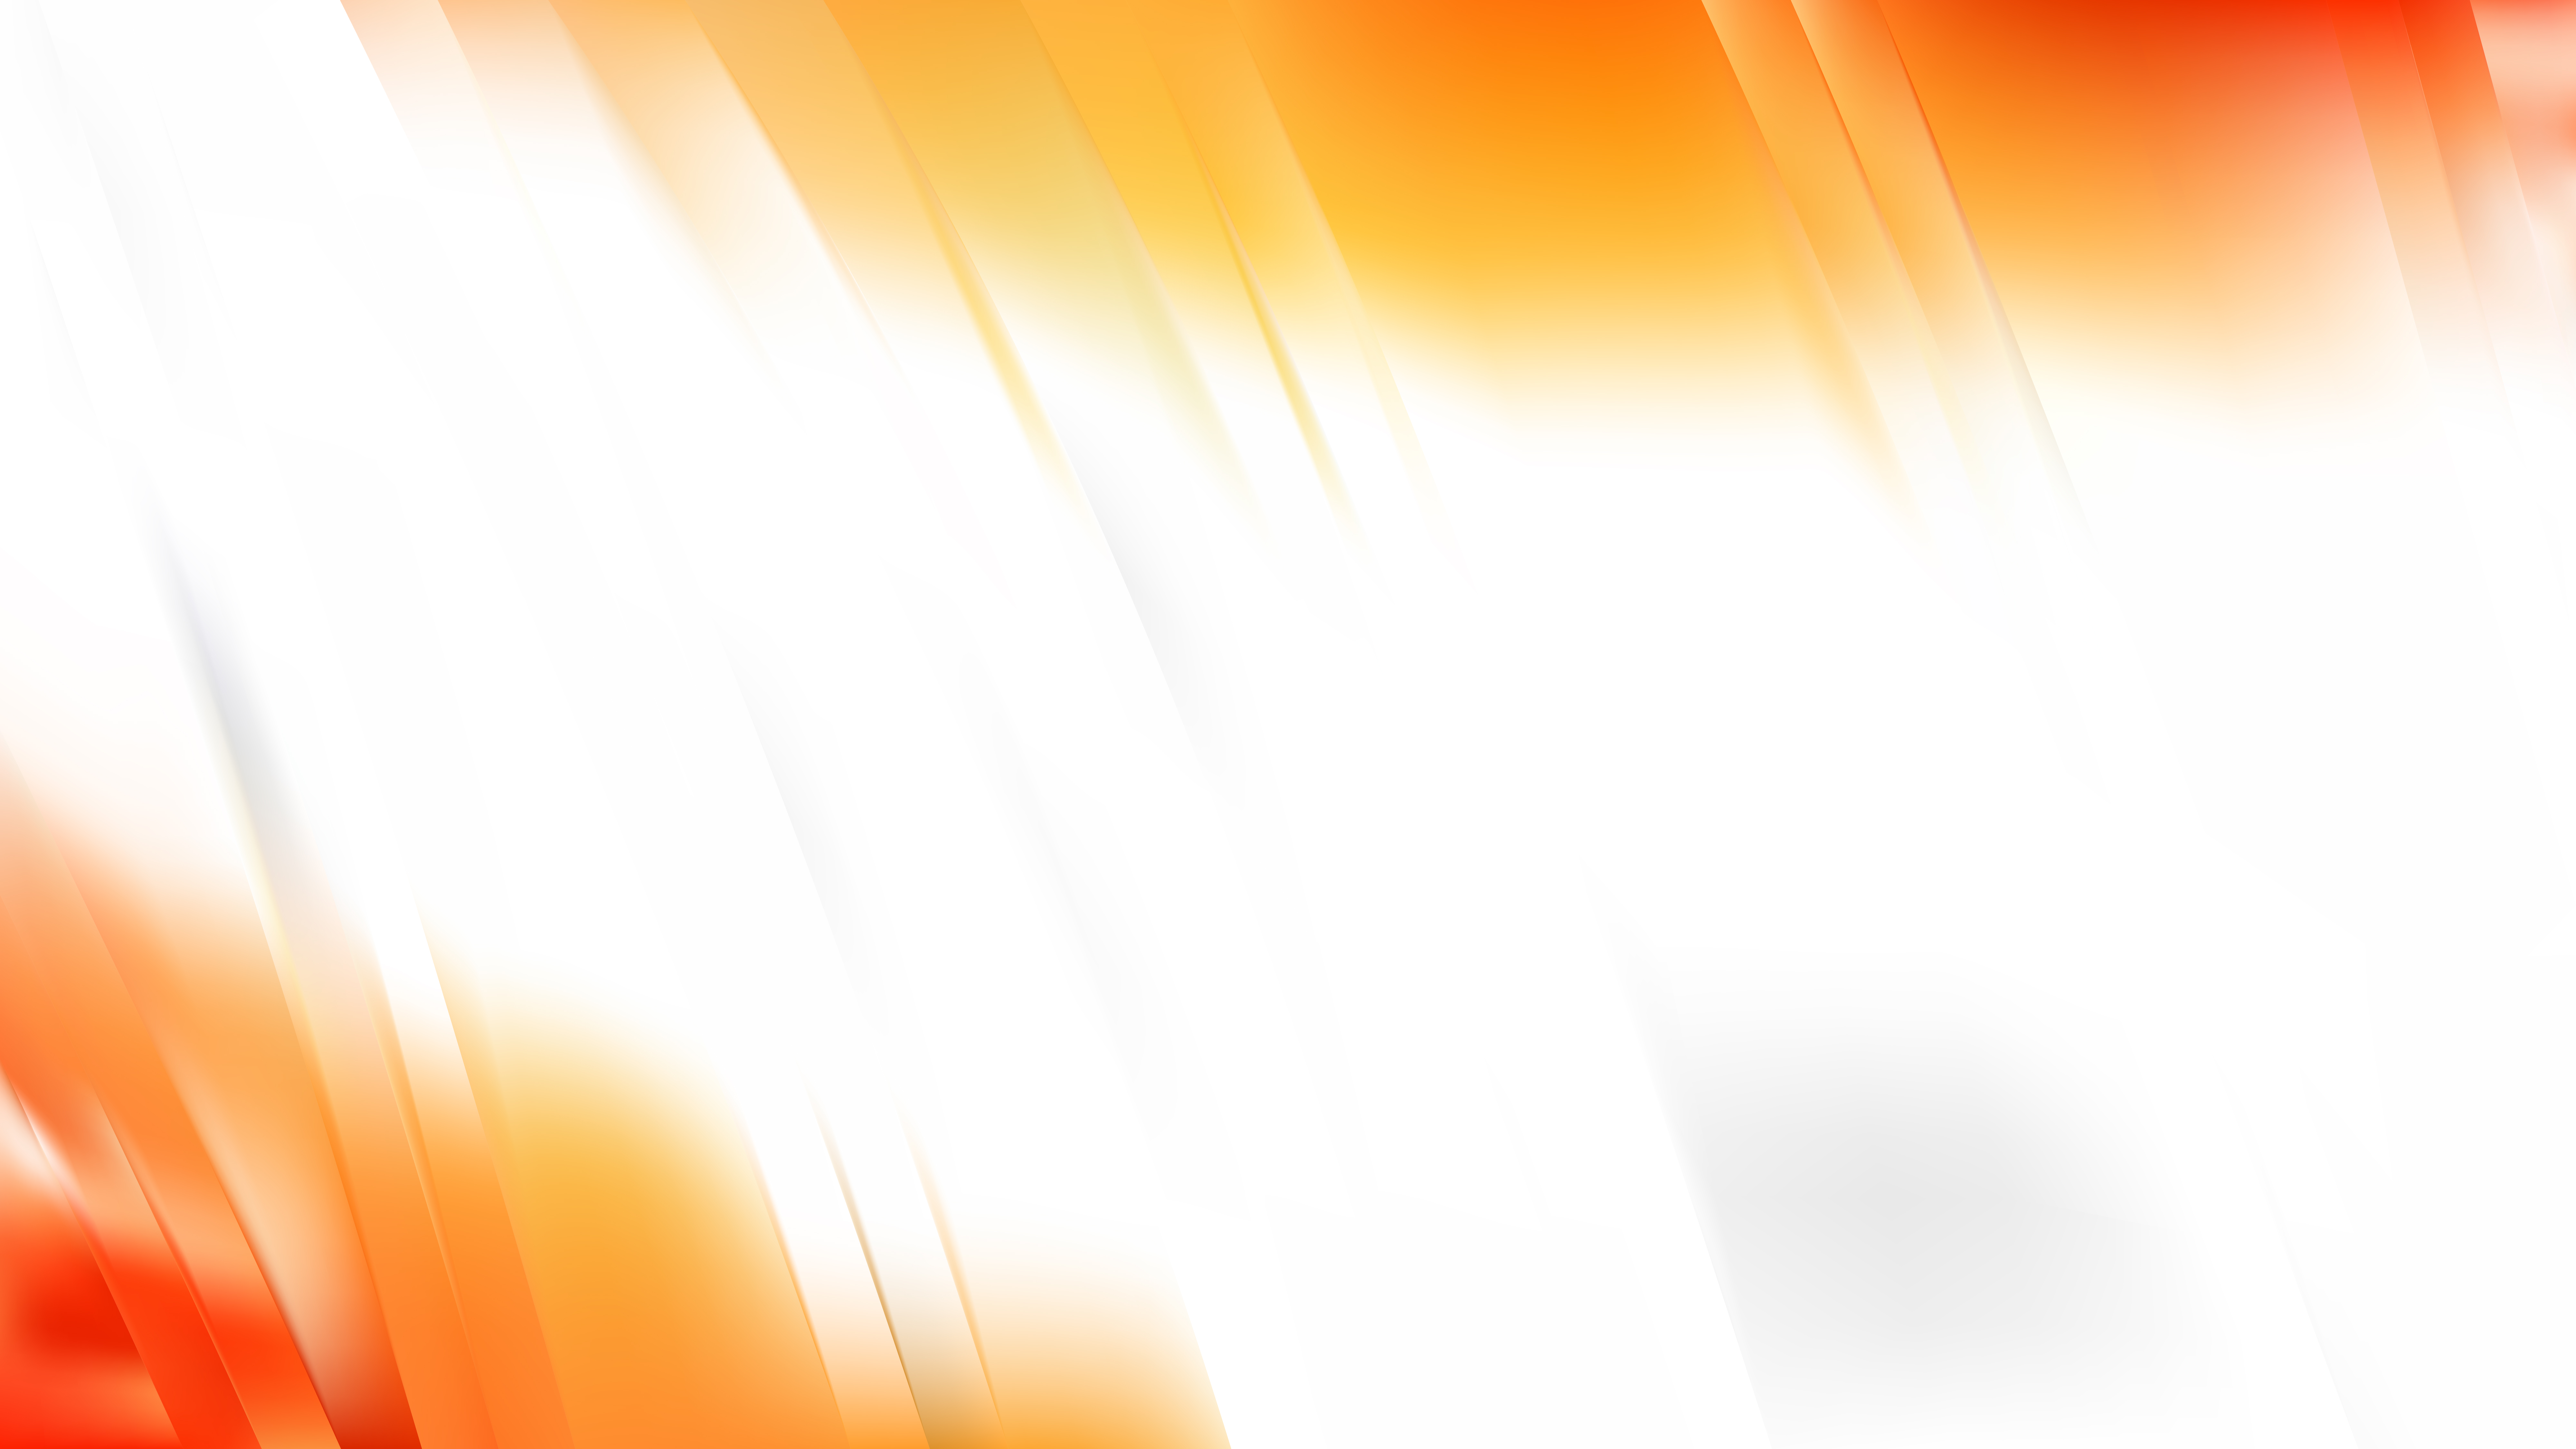 Free Light Orange Background Illustration